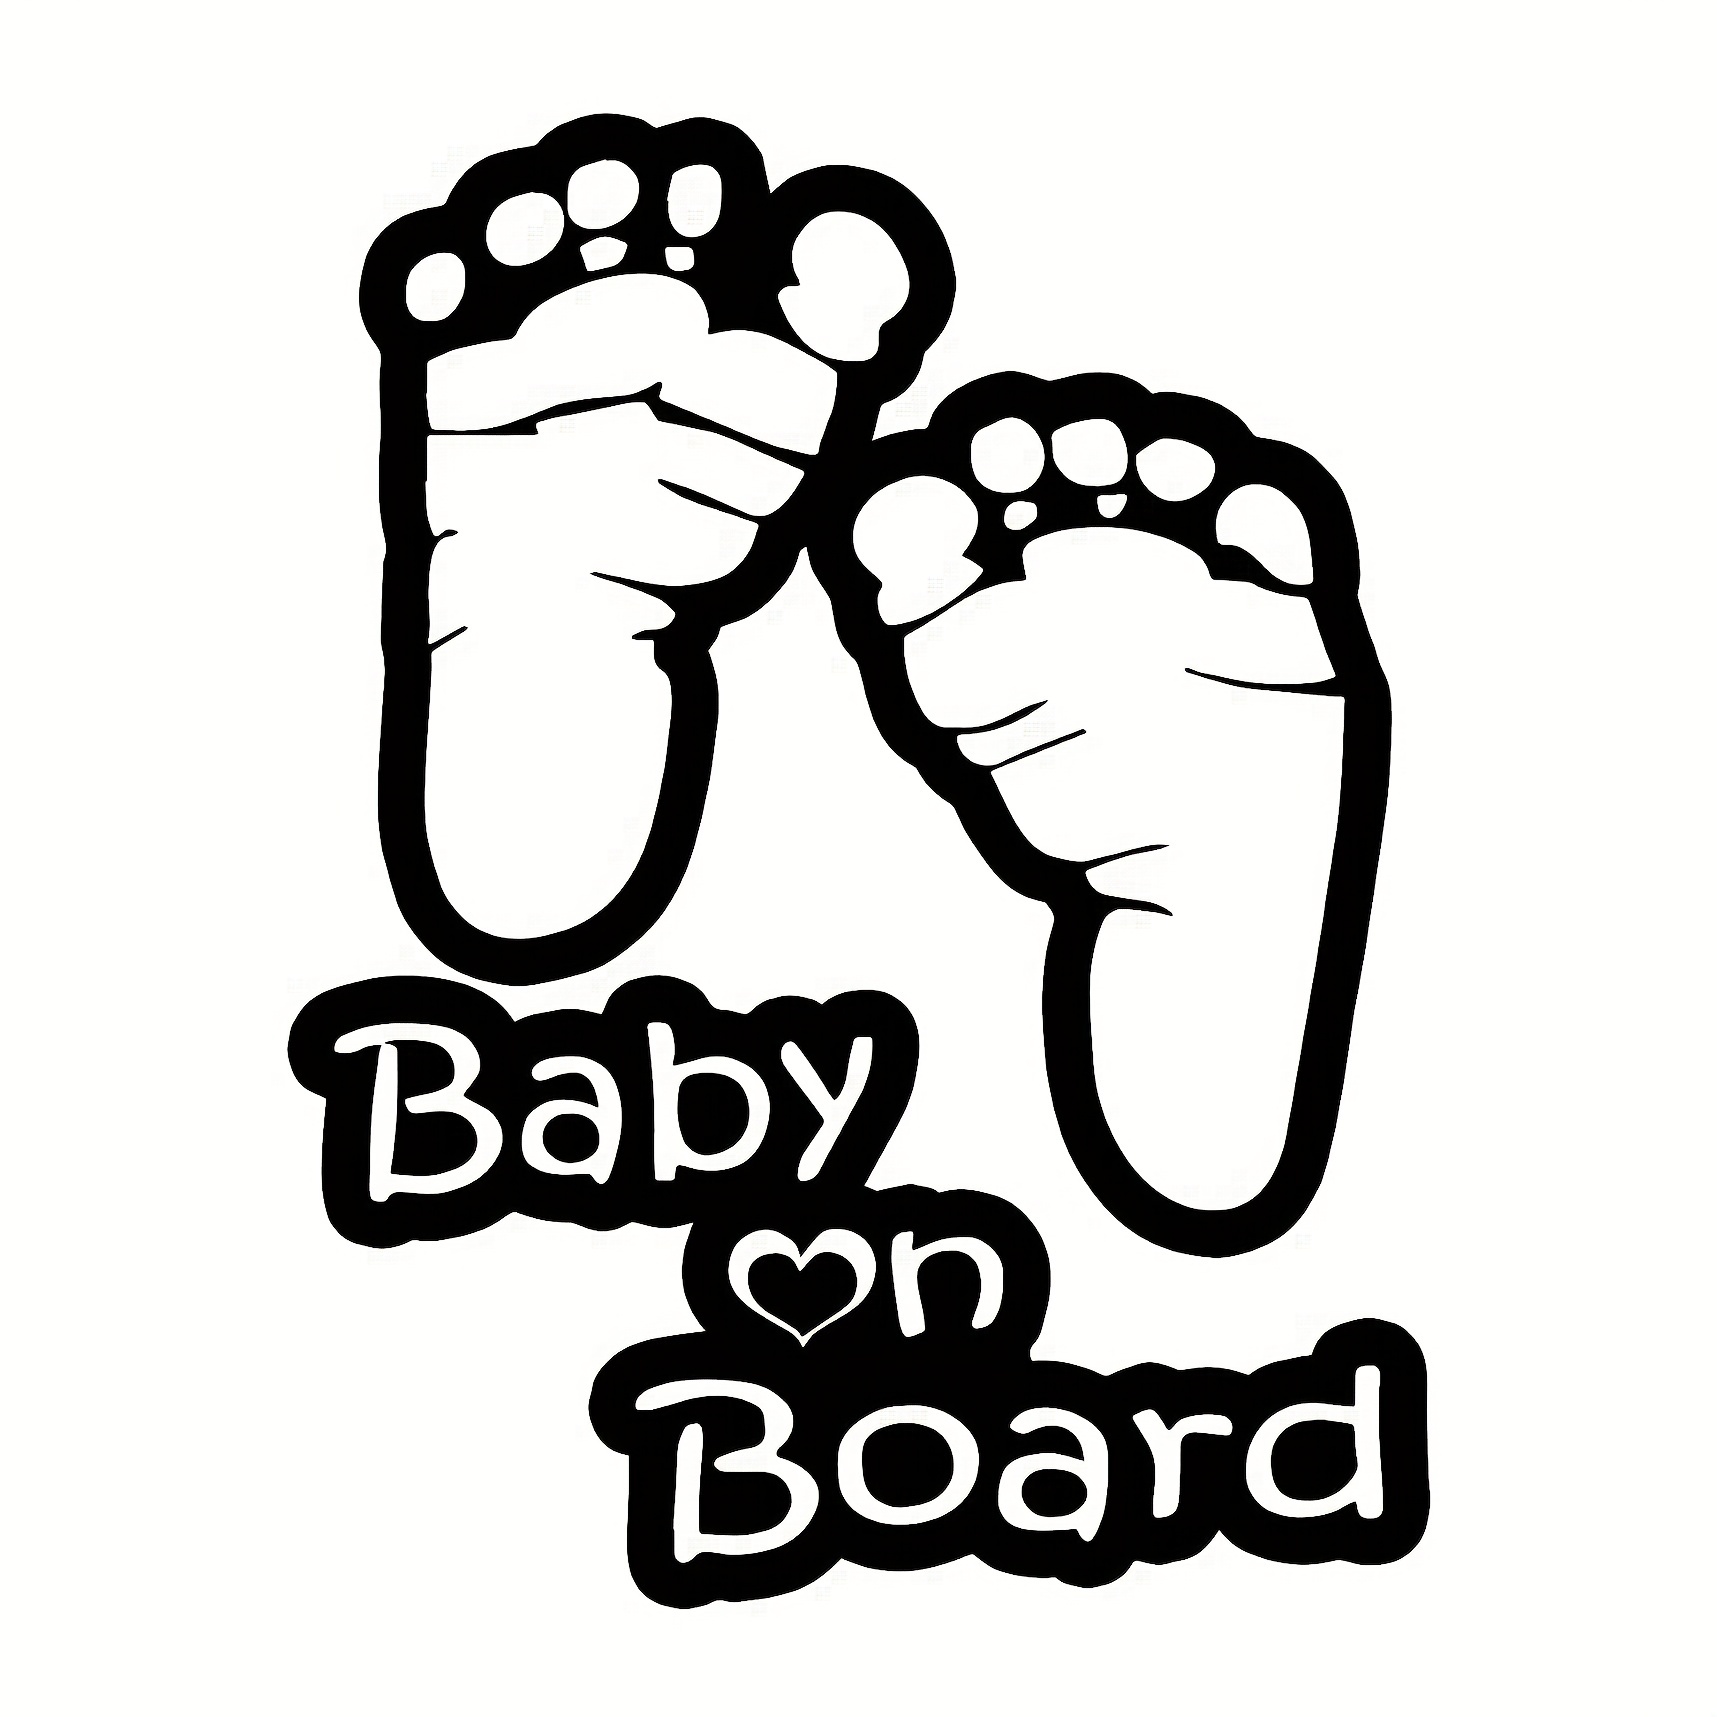 1pc Baby On Board Aufkleber Autoaufkleber Warnschild Gelb Signal Niedliches  Baby-Design Reflektierende Aufkleber